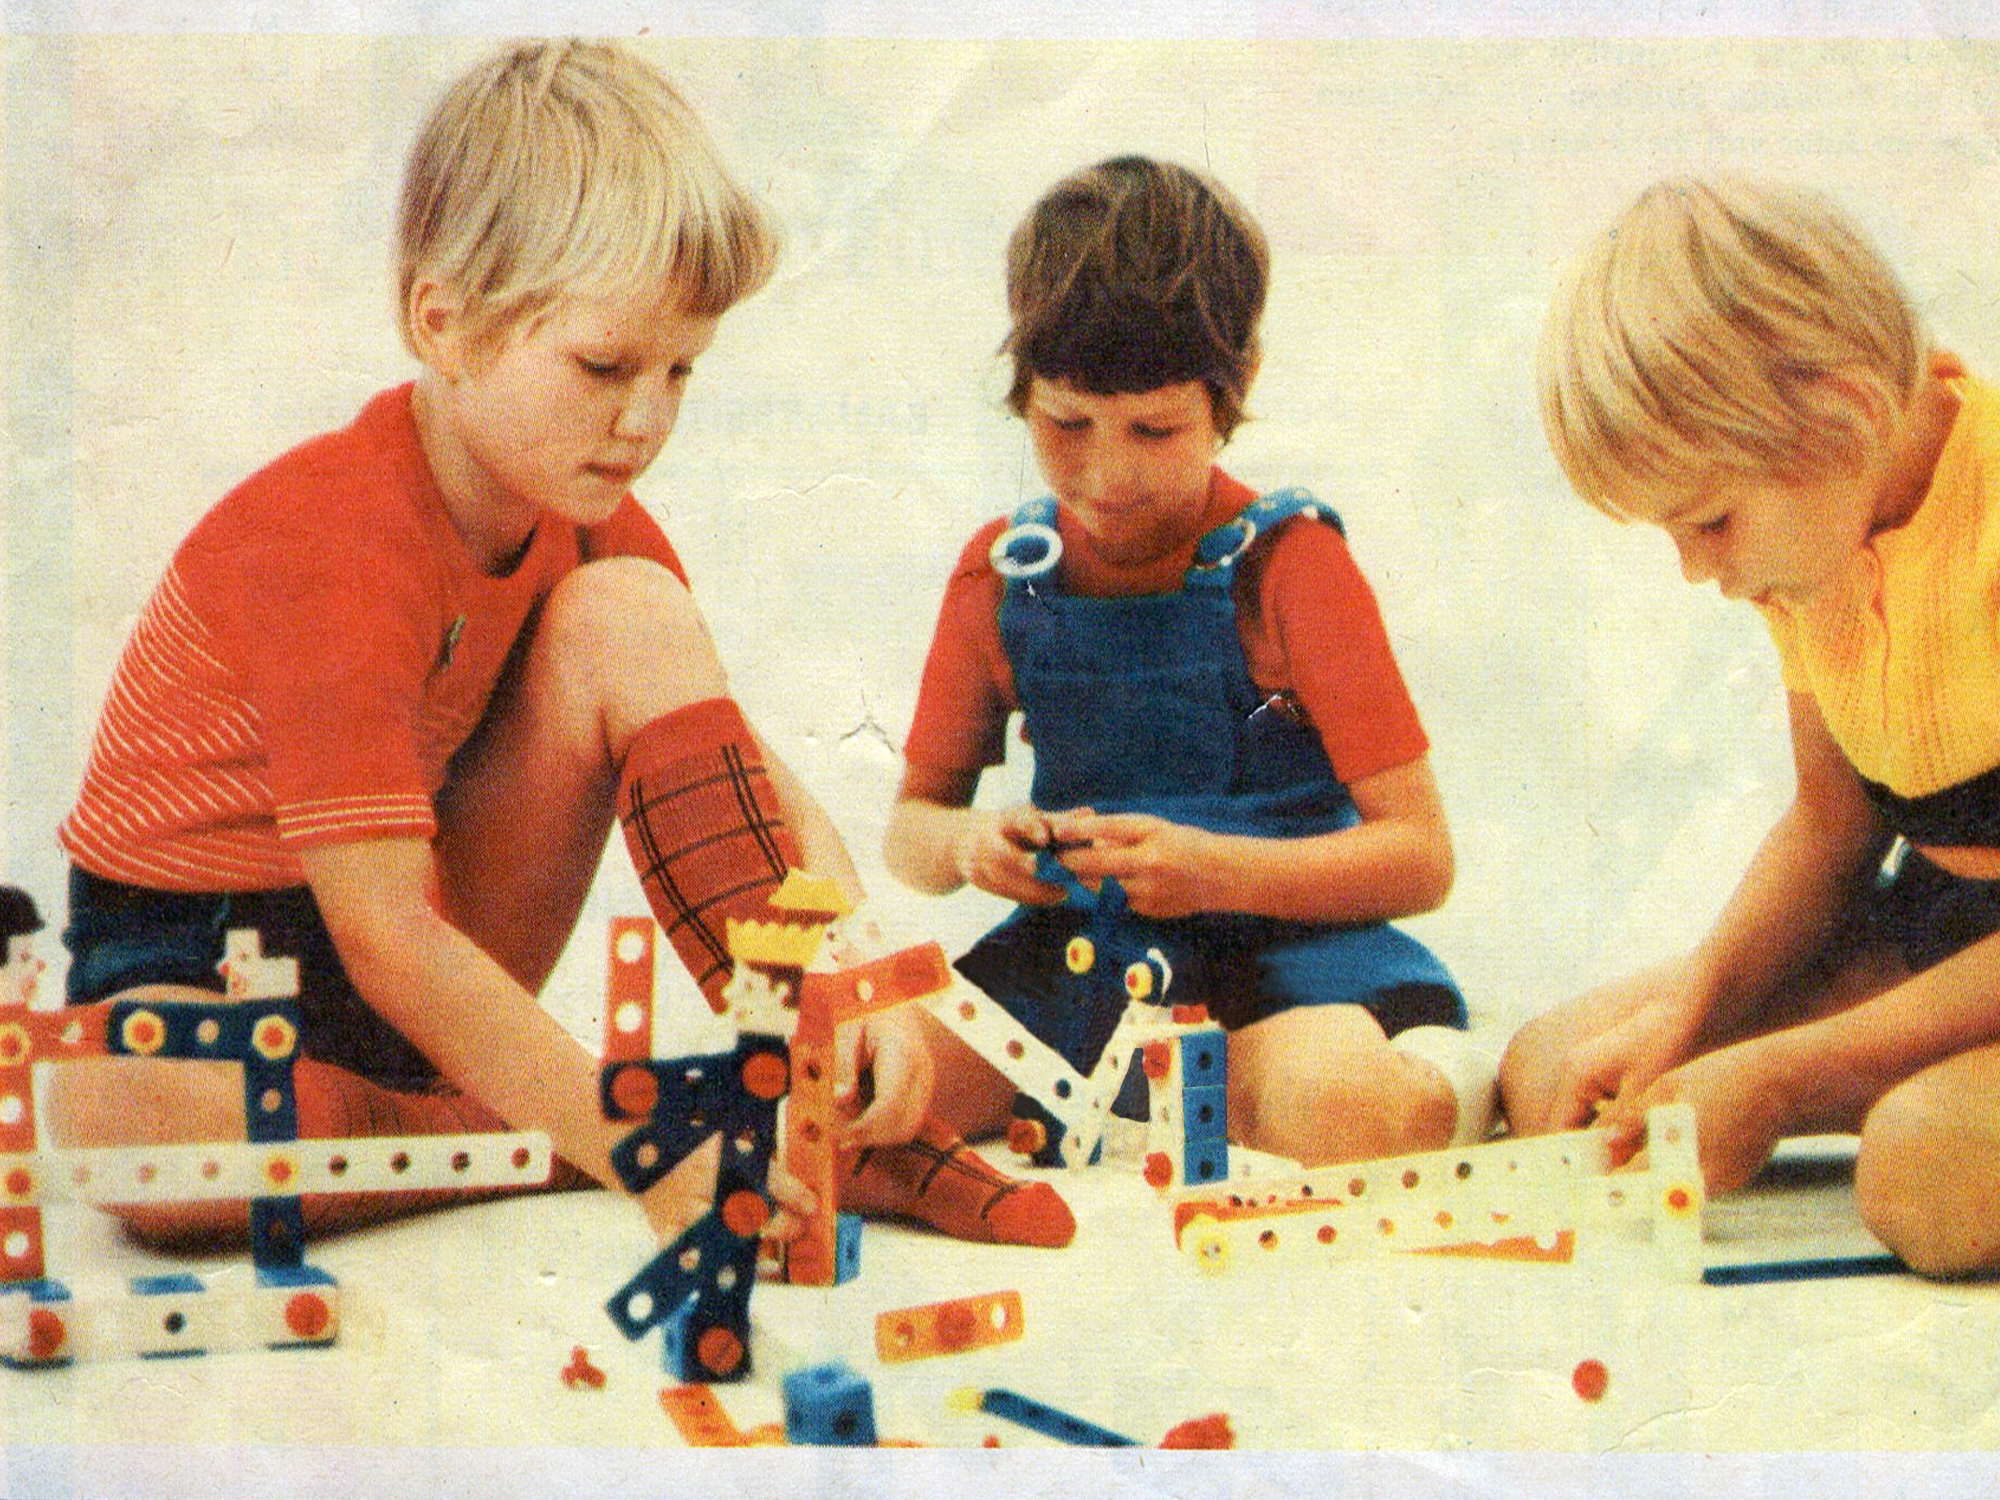 Drei Kinder spielen mit Baukasten